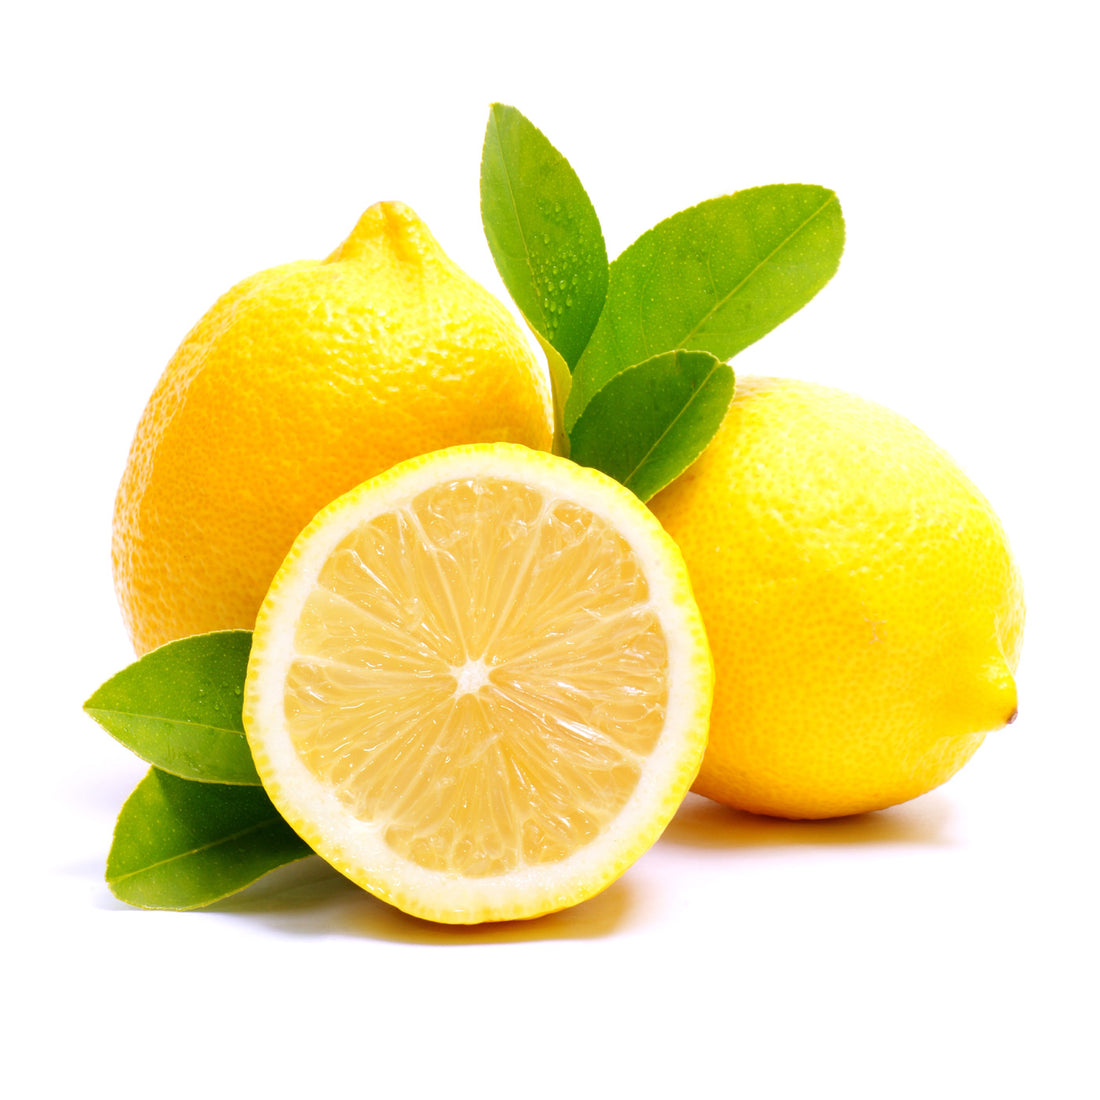 Make your own Lemon Spray & Wipe Cleaner